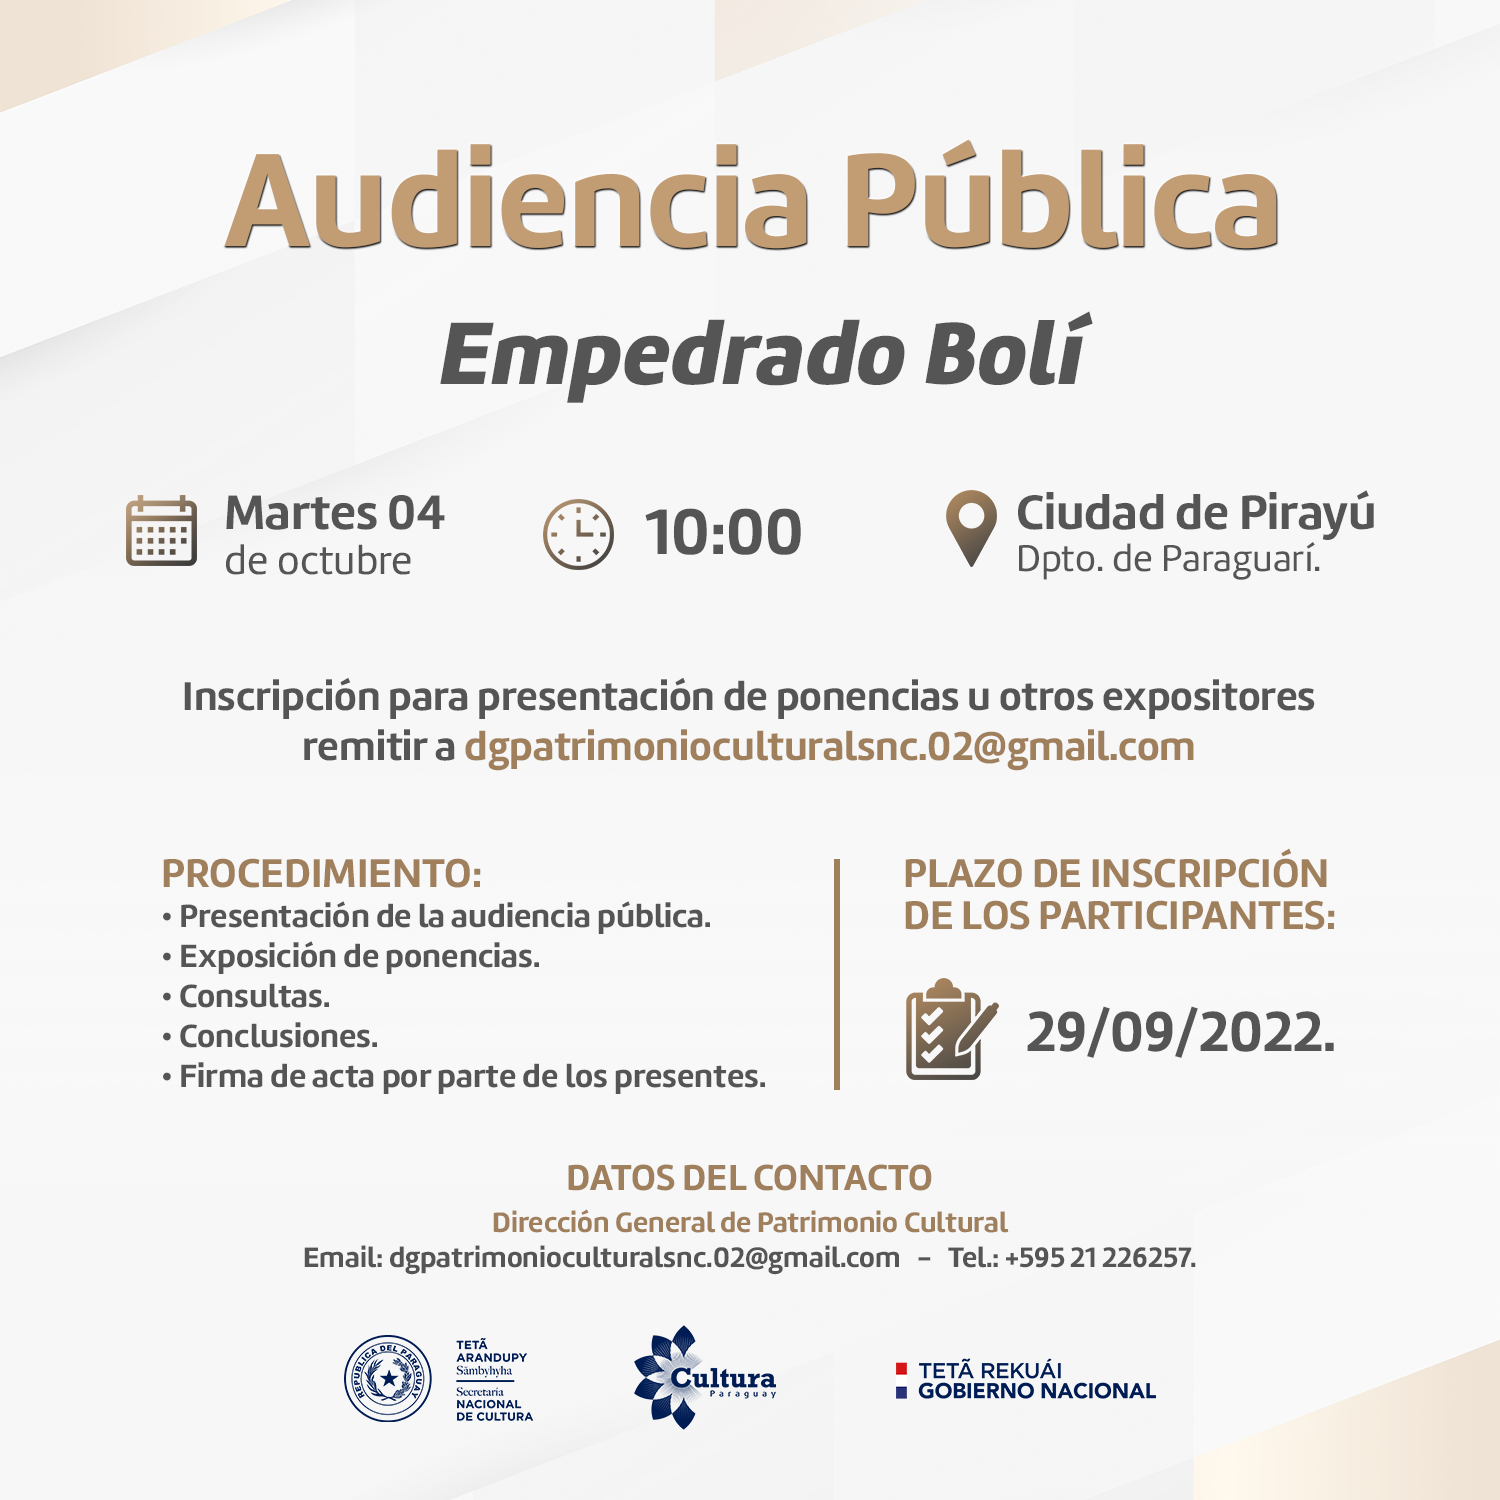 Pirayú: Cultura invita a inscribirse como participantes de la Audiencia Pública “Empedrado Bolí” imagen